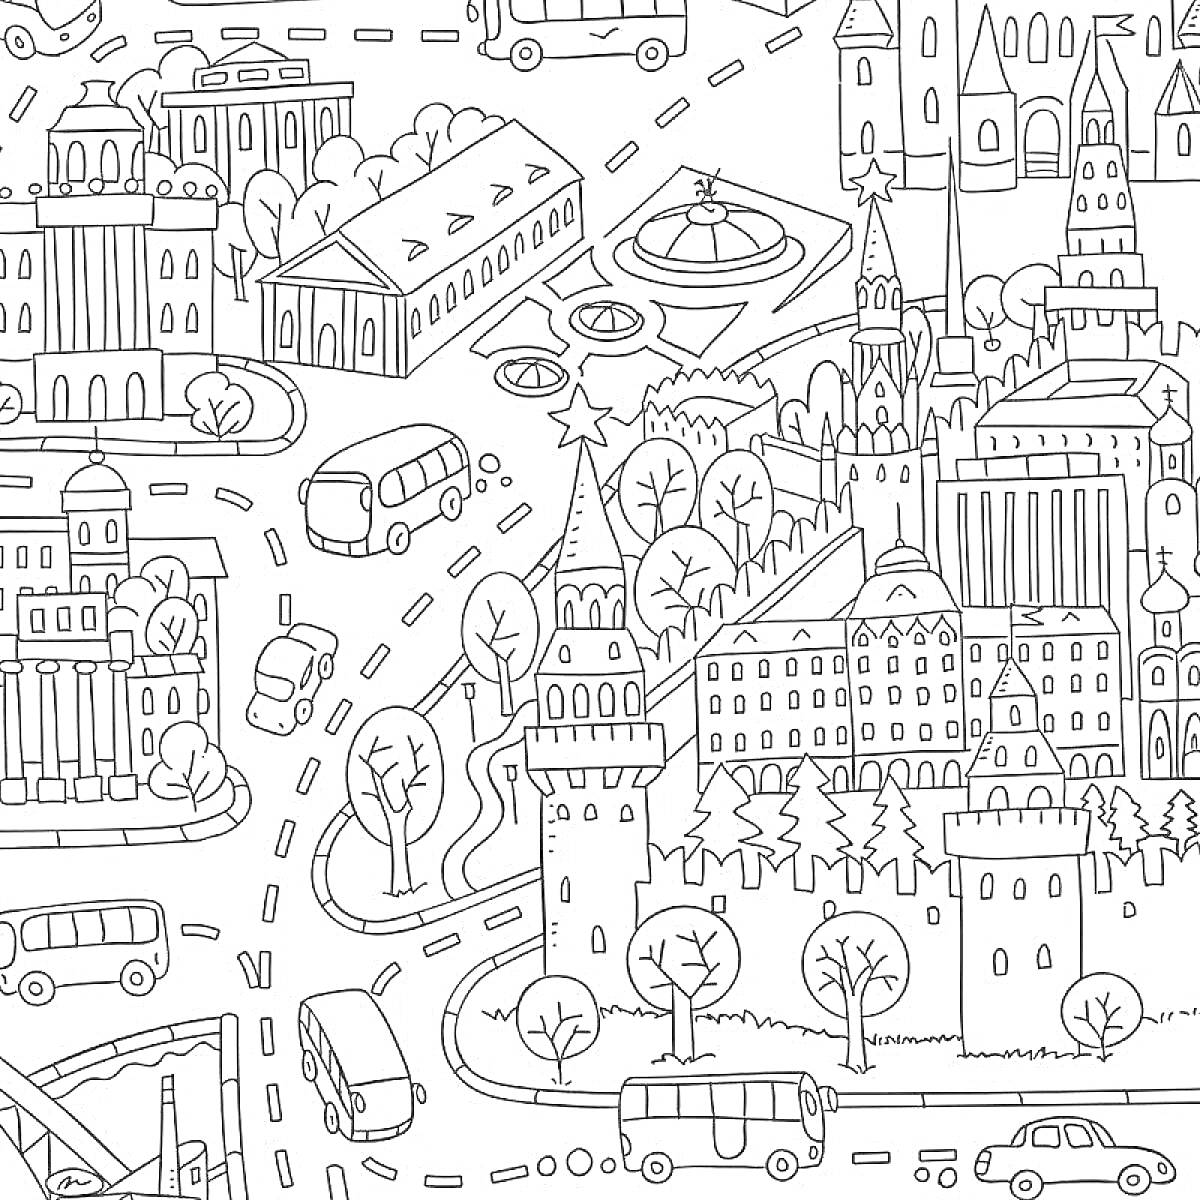 Раскраска карта города с дорогами, зданиями, автобусами и деревьями